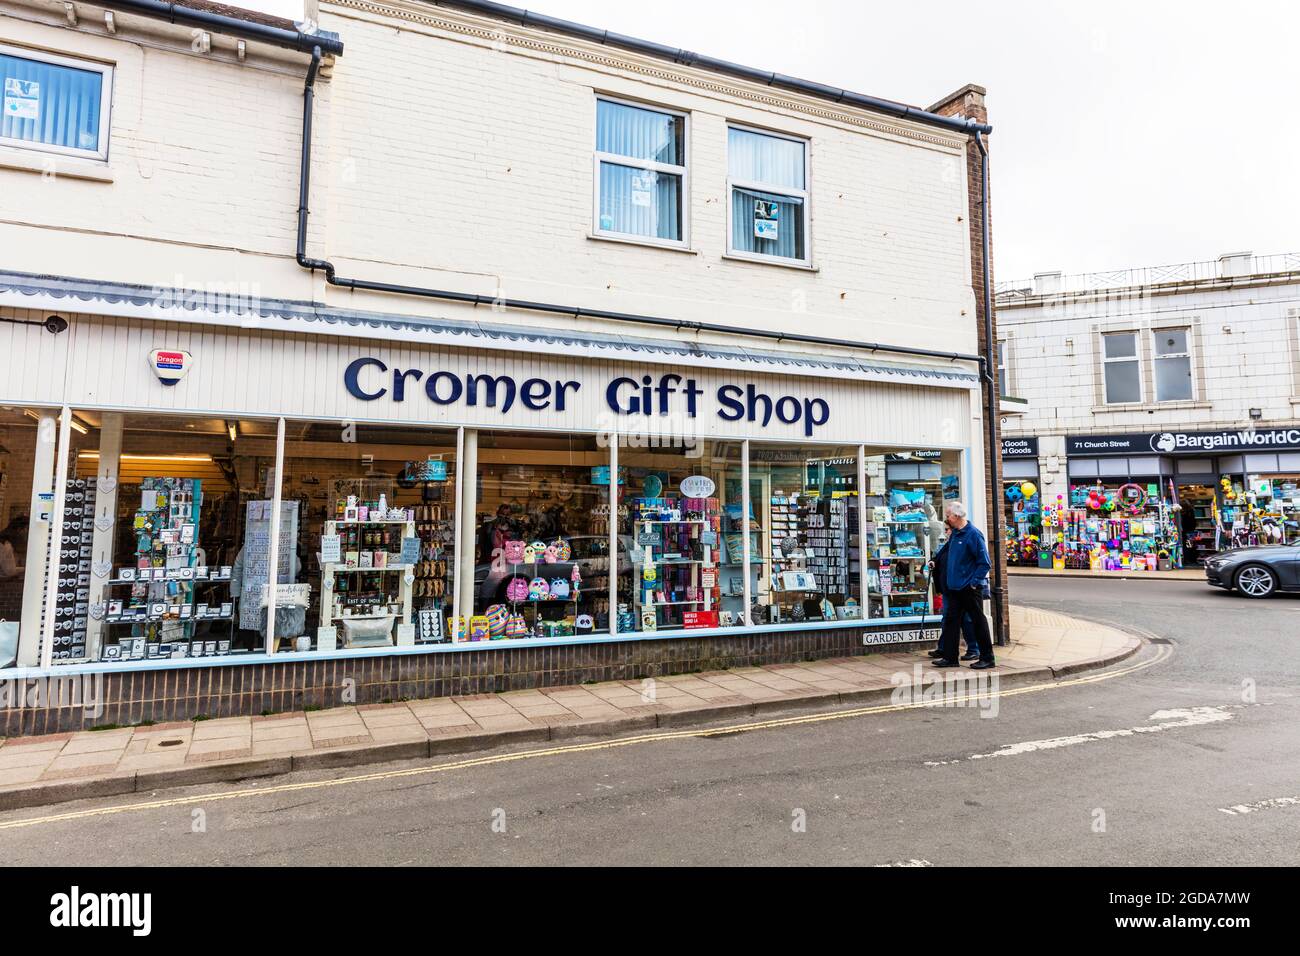 Cromer, Norfolk, UK, Inghilterra, Cromer centro città, Cromer negozi, negozi, negozi, negozi, città, strada, strada, negozio di articoli da regalo, negozio di articoli da regalo Cromer Foto Stock